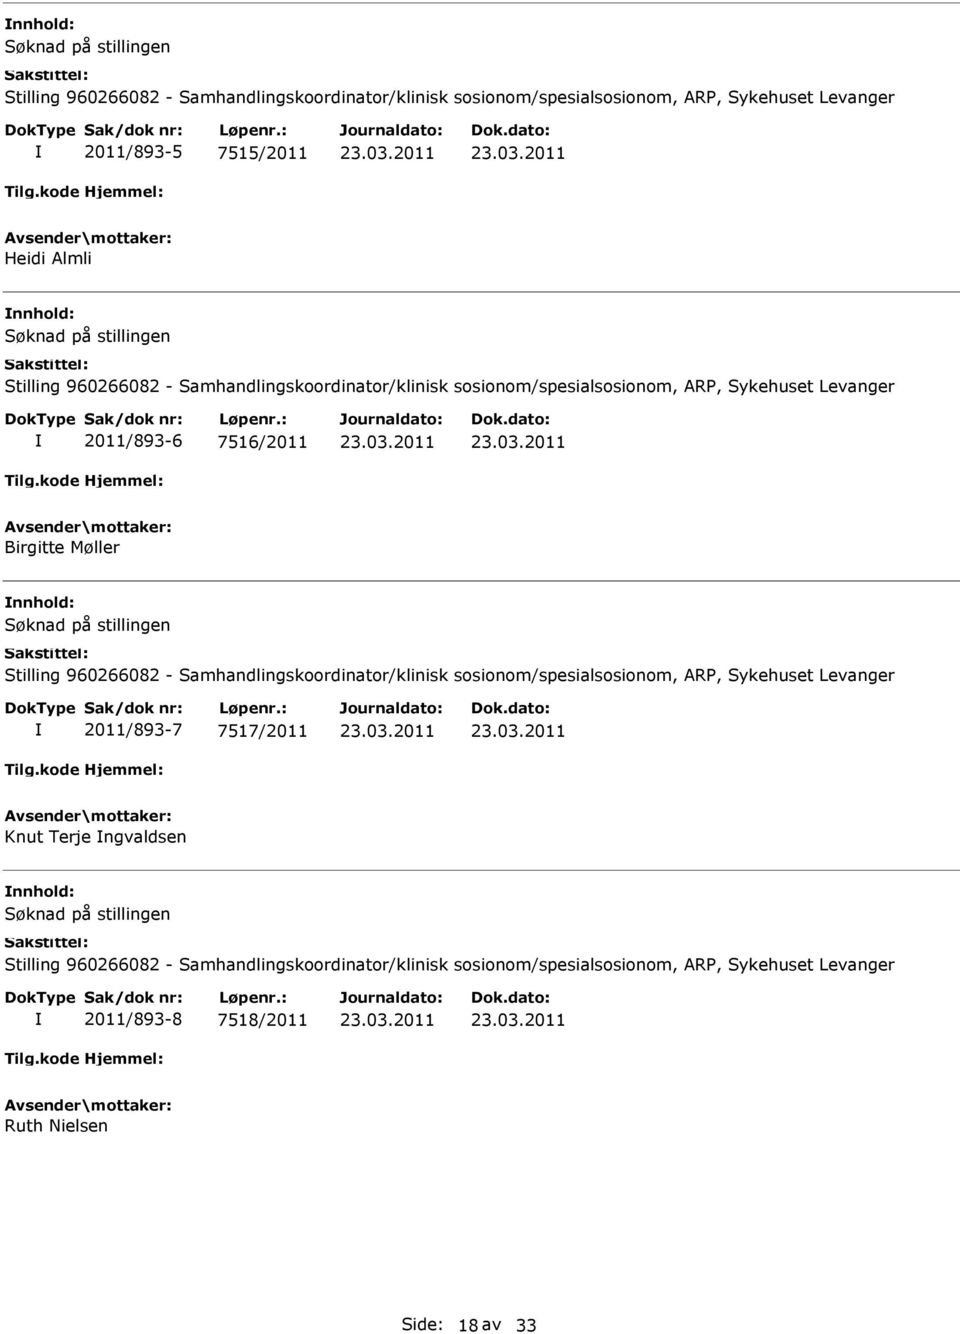 Stilling 960266082 - Samhandlingskoordinator/klinisk sosionom/spesialsosionom, ARP, Sykehuset Levanger 2011/893-7 7517/2011 Knut Terje